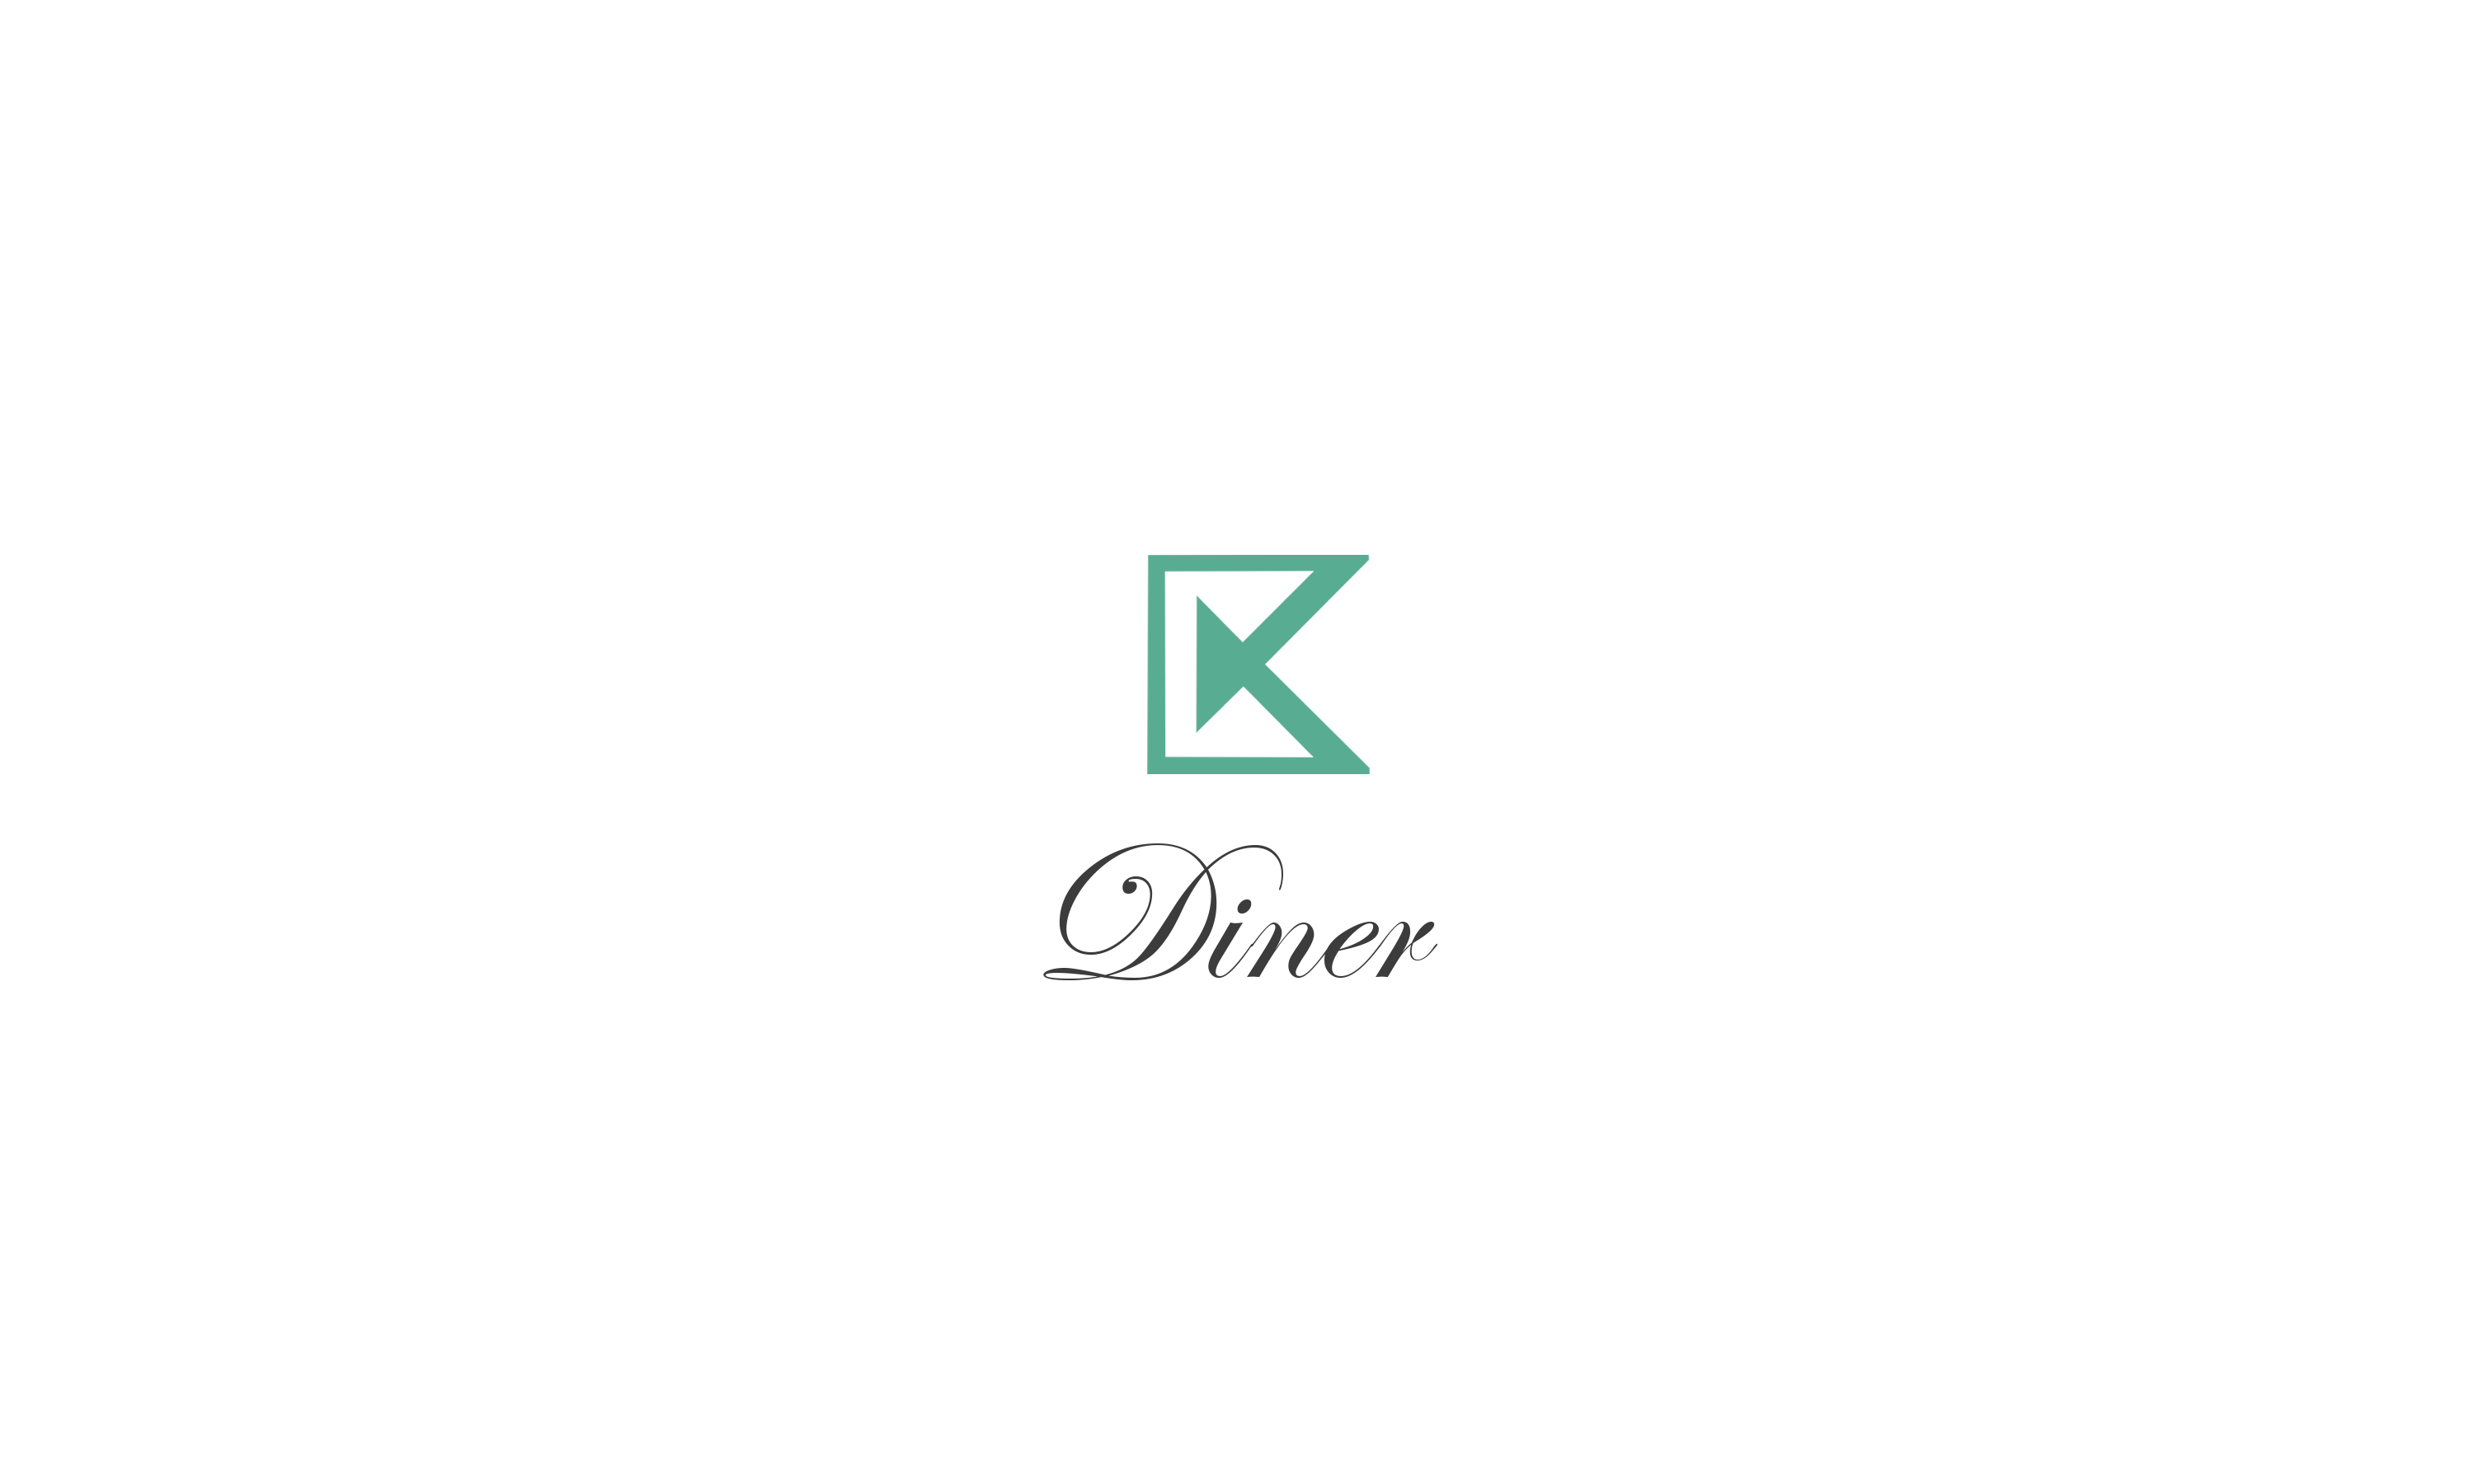 CK-Diner-logo-856a7b6d